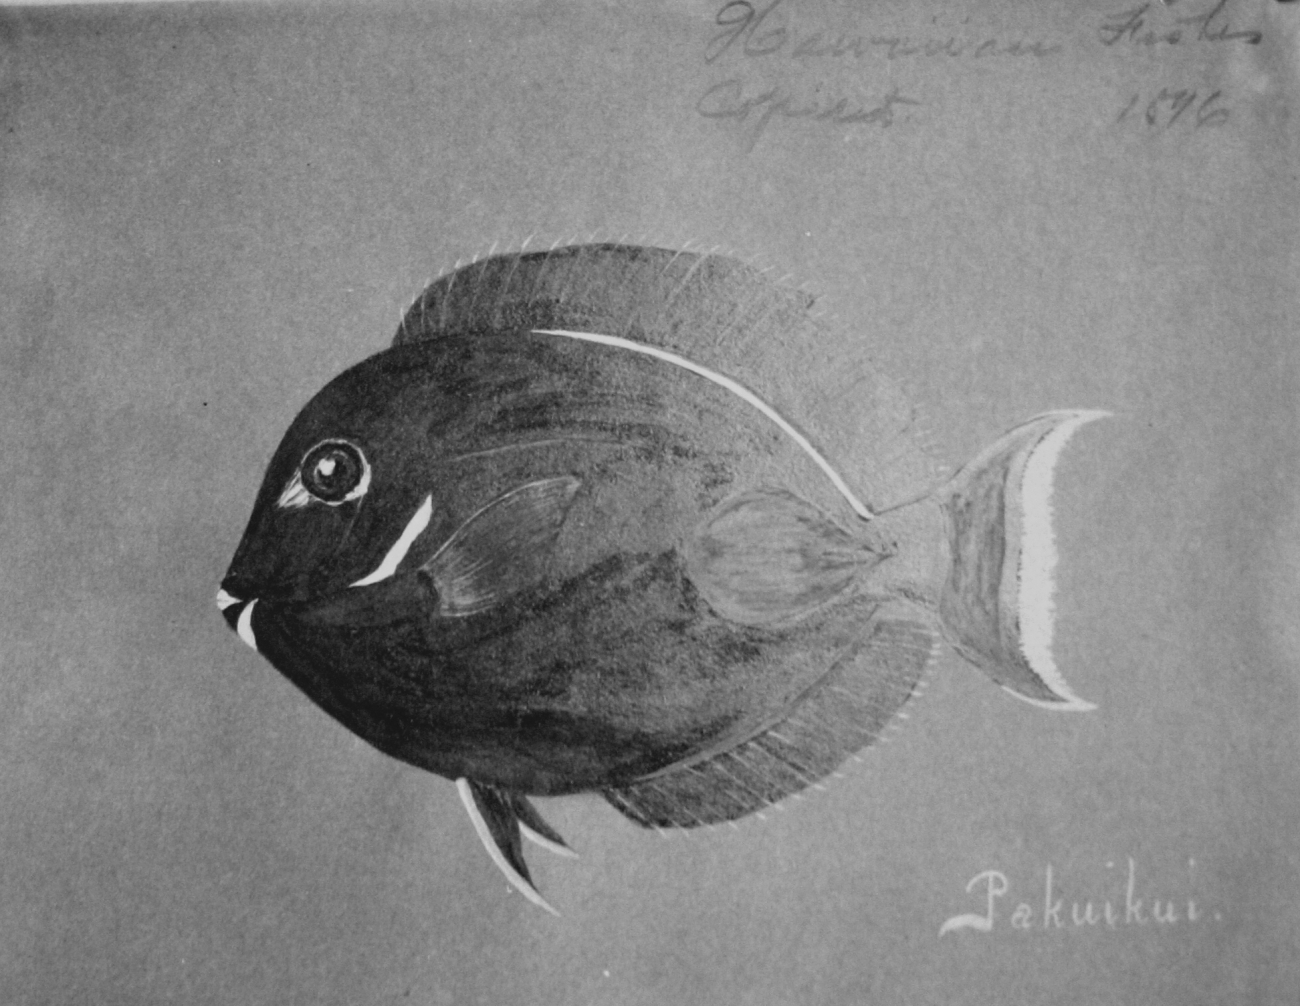 Hawaiian fishes, 1896, Pakuikui